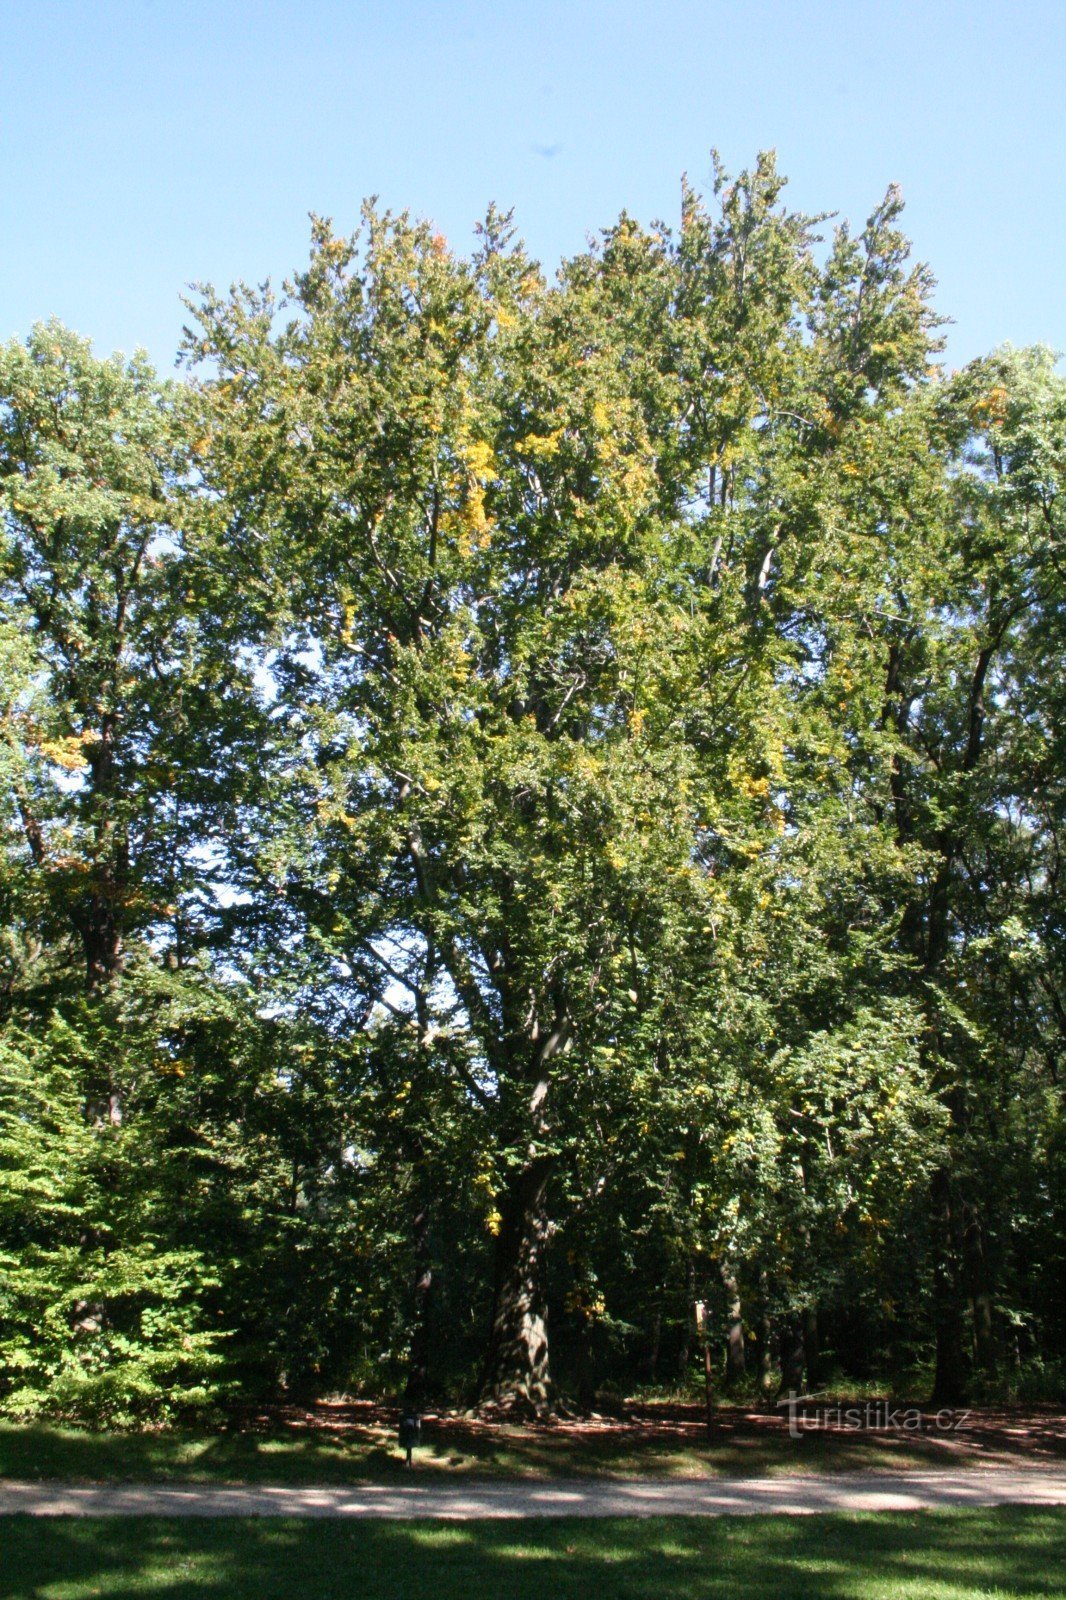 Hêtre commémoratif dans la réserve naturelle de Hvězda